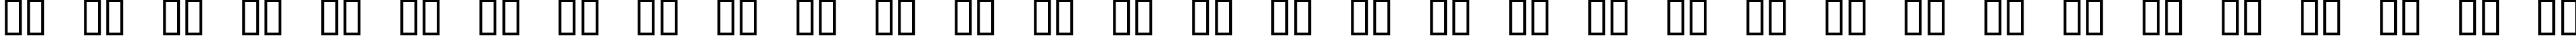 Пример написания русского алфавита шрифтом Fanfold